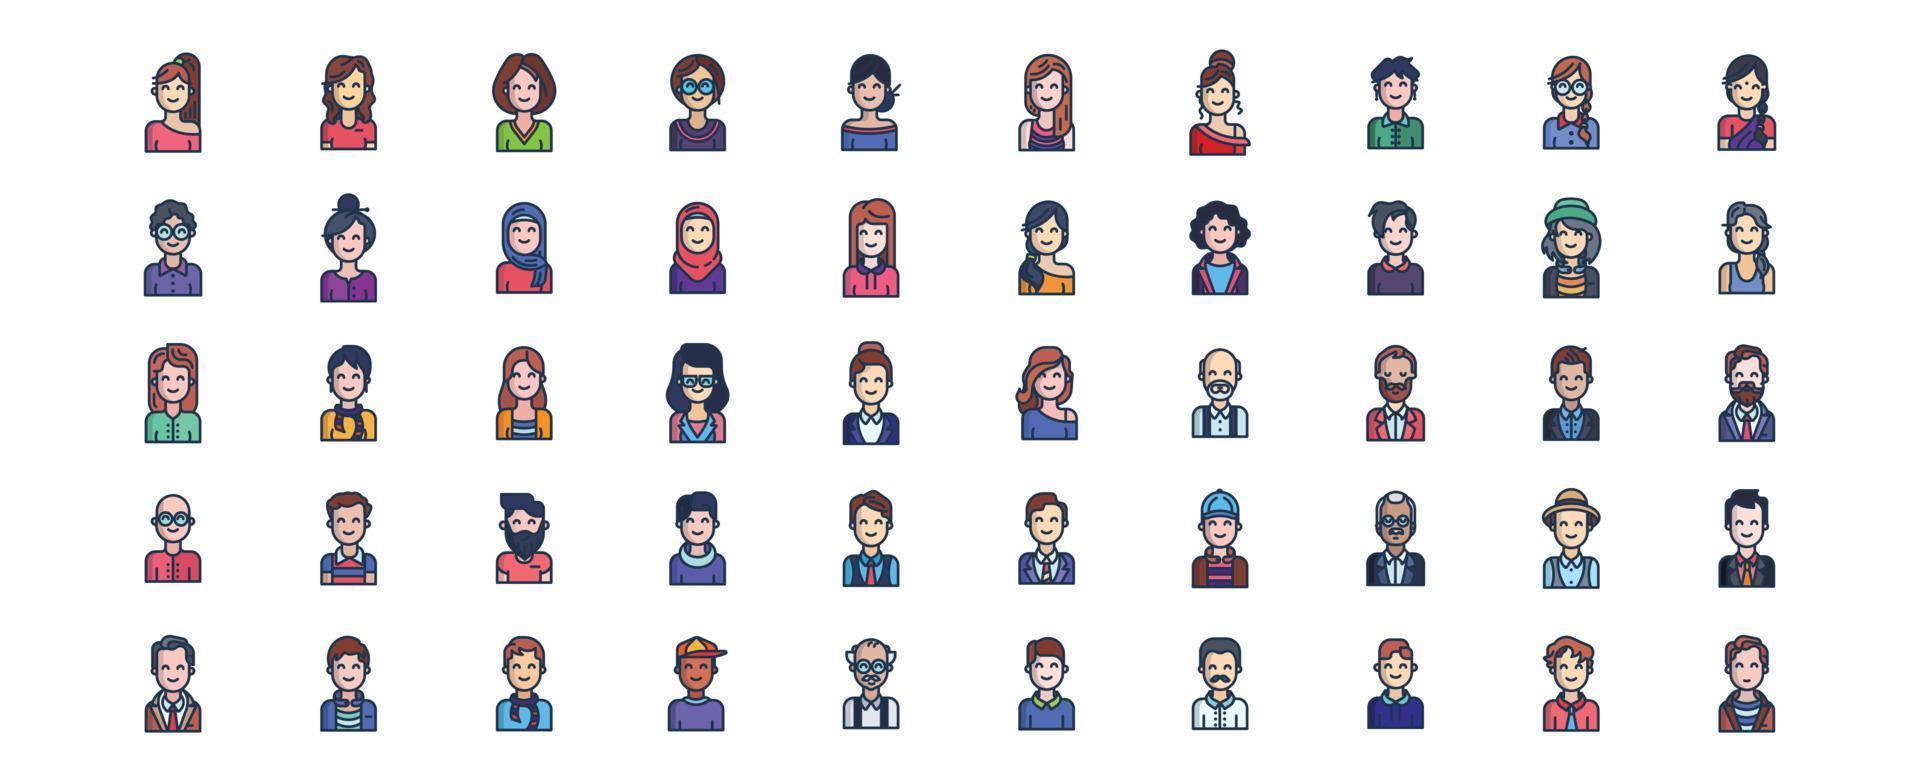 coleção de ícones relacionados ao perfil do usuário, incluindo ícones como homem, mulher, mãe, pai e muito mais. ilustrações vetoriais, conjunto perfeito de pixels vetor